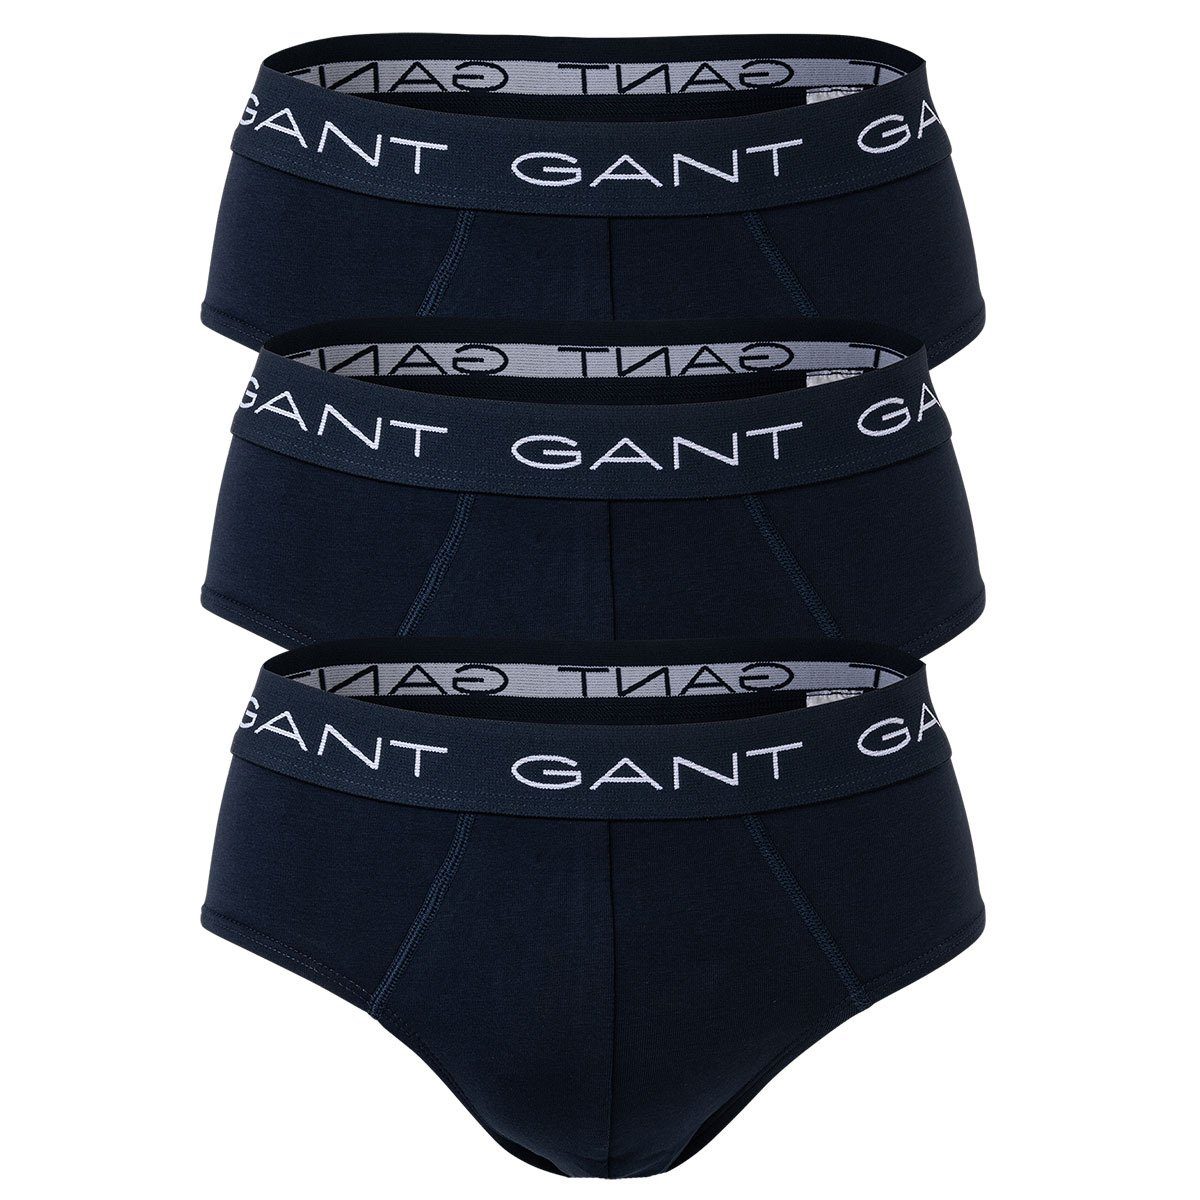 Gant 3er - Slips, Slip Herren Cotton Stretch Briefs, Pack Marine